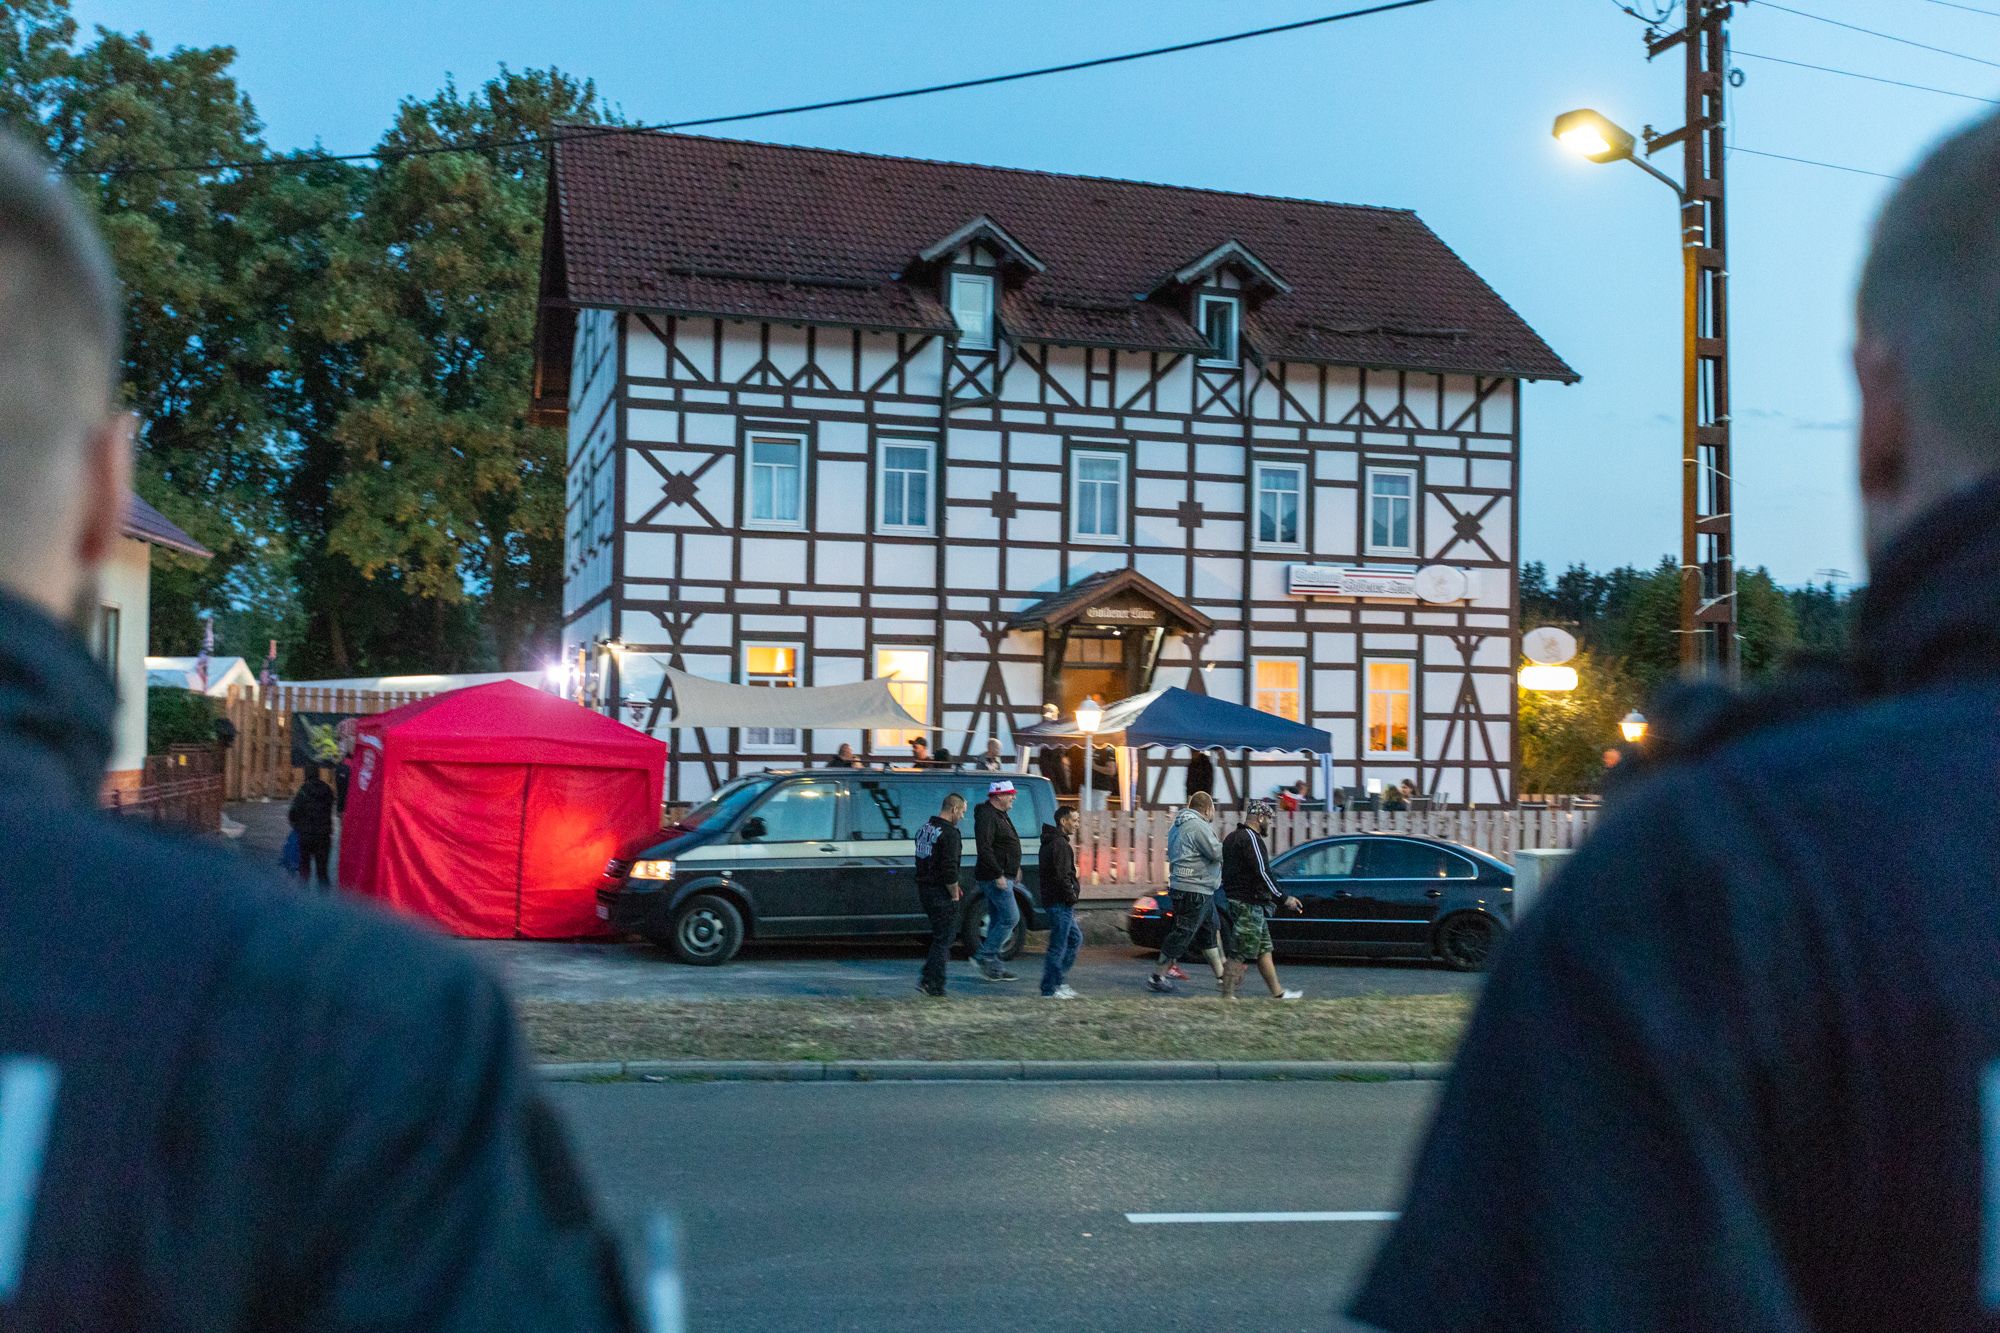 Polizei vor einem Gebäude in Kloster Veßra (Archivbild August 2018) | picture alliance/dpa